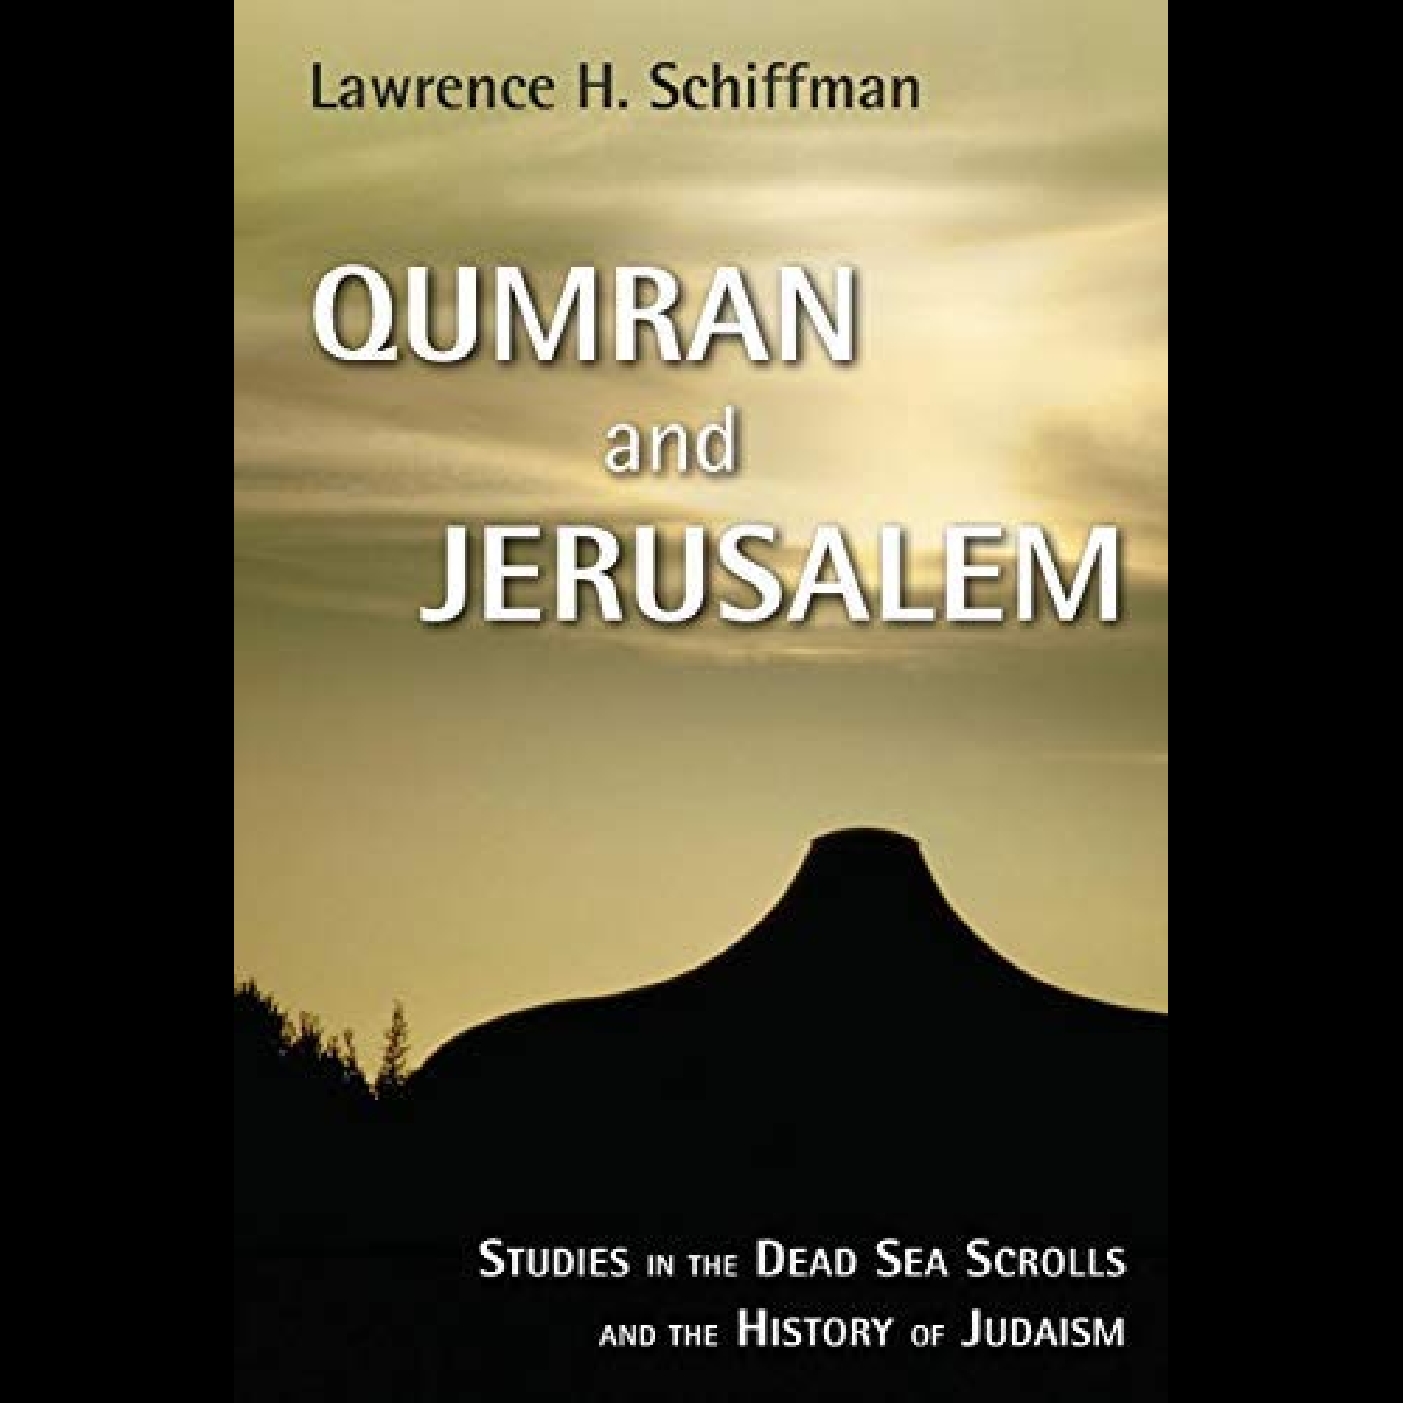 Dead Sea Scrolls #1 - Professor Lawrence Schiffman